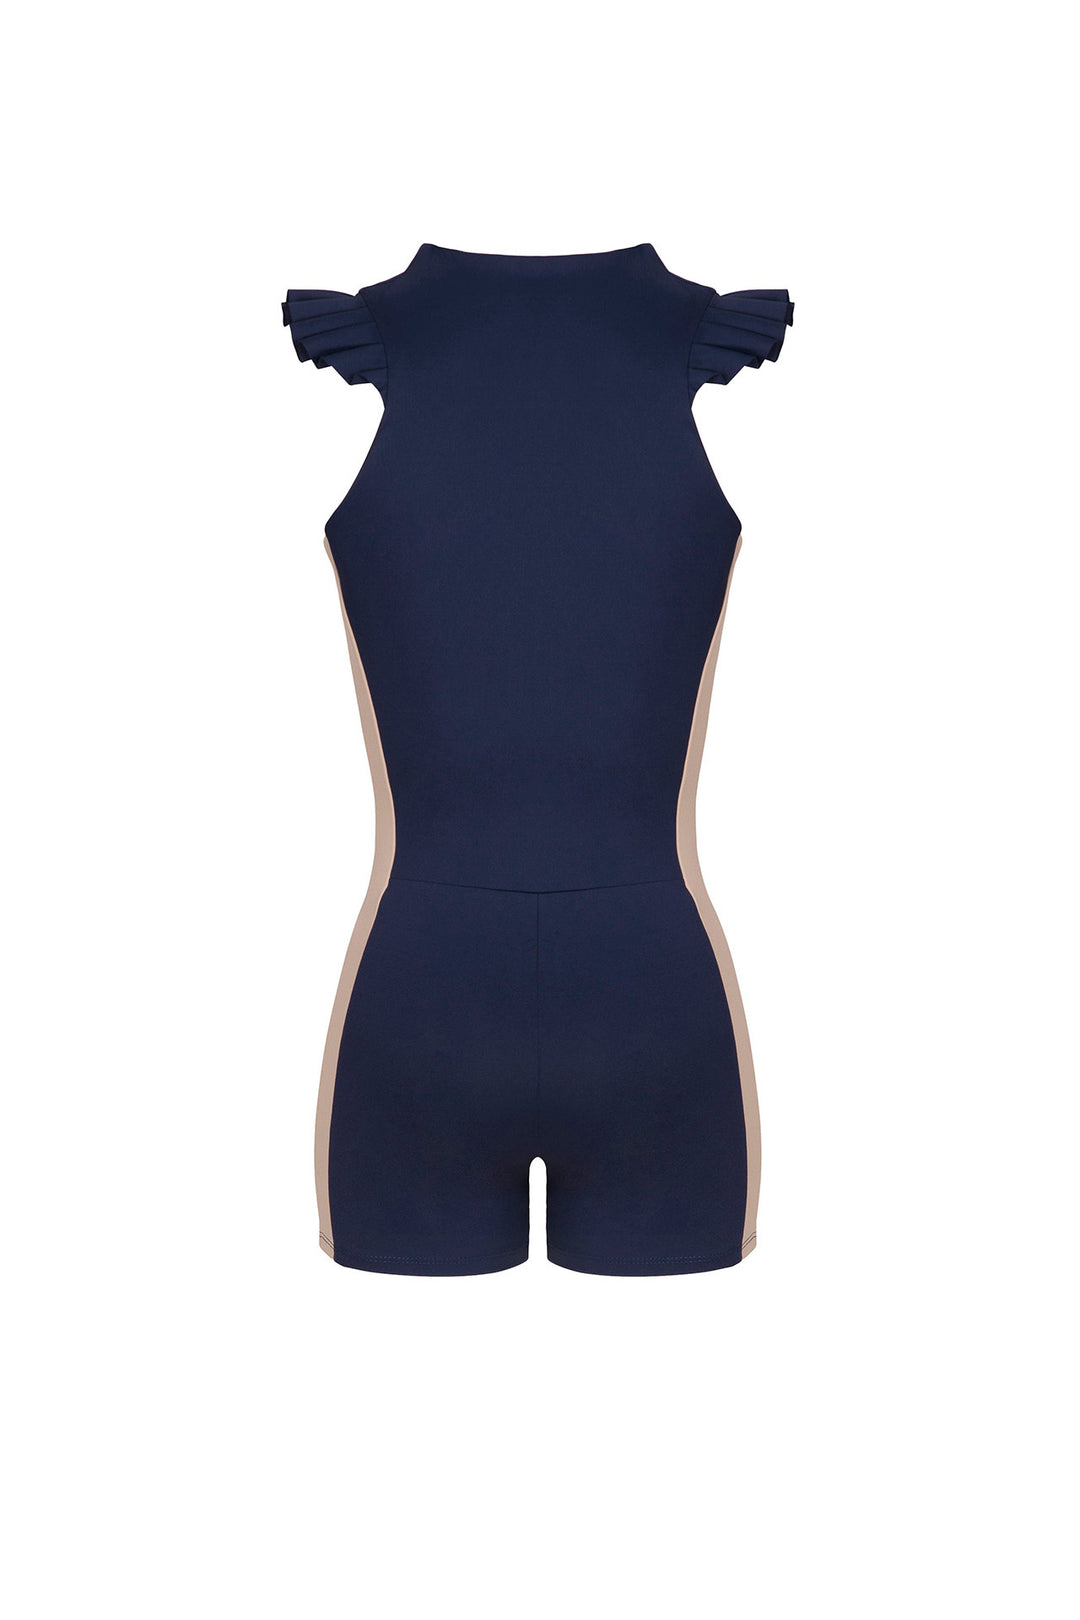 Fiona Biker Suit Navy / Light Blue / Chantilly / Shake